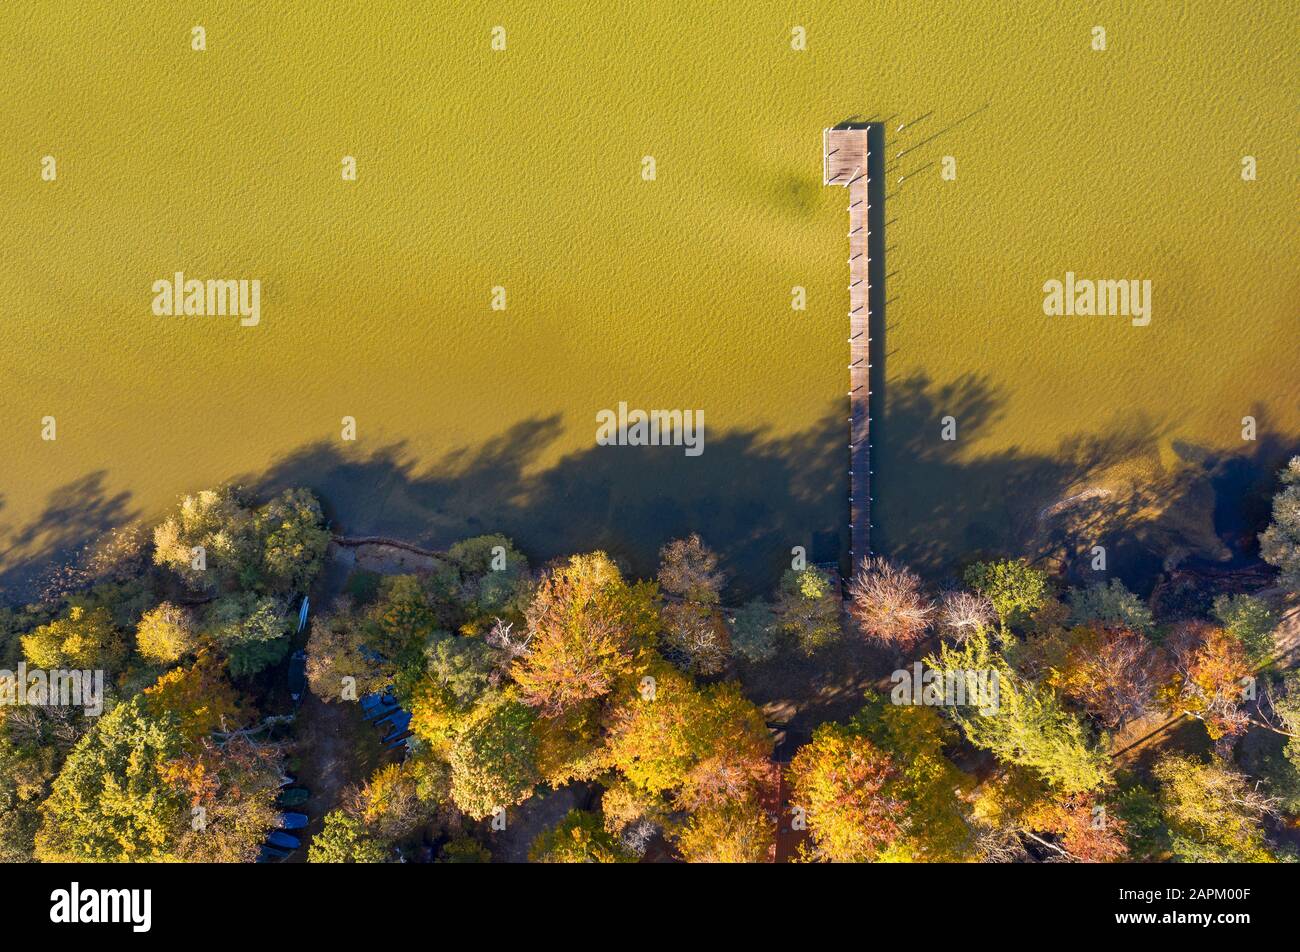 Herbststimmung am Starnberger See bei St. Heinrich, Luftbild, Fünfseenland, Oberbayern, Bayern, Deutschland Stock Photo